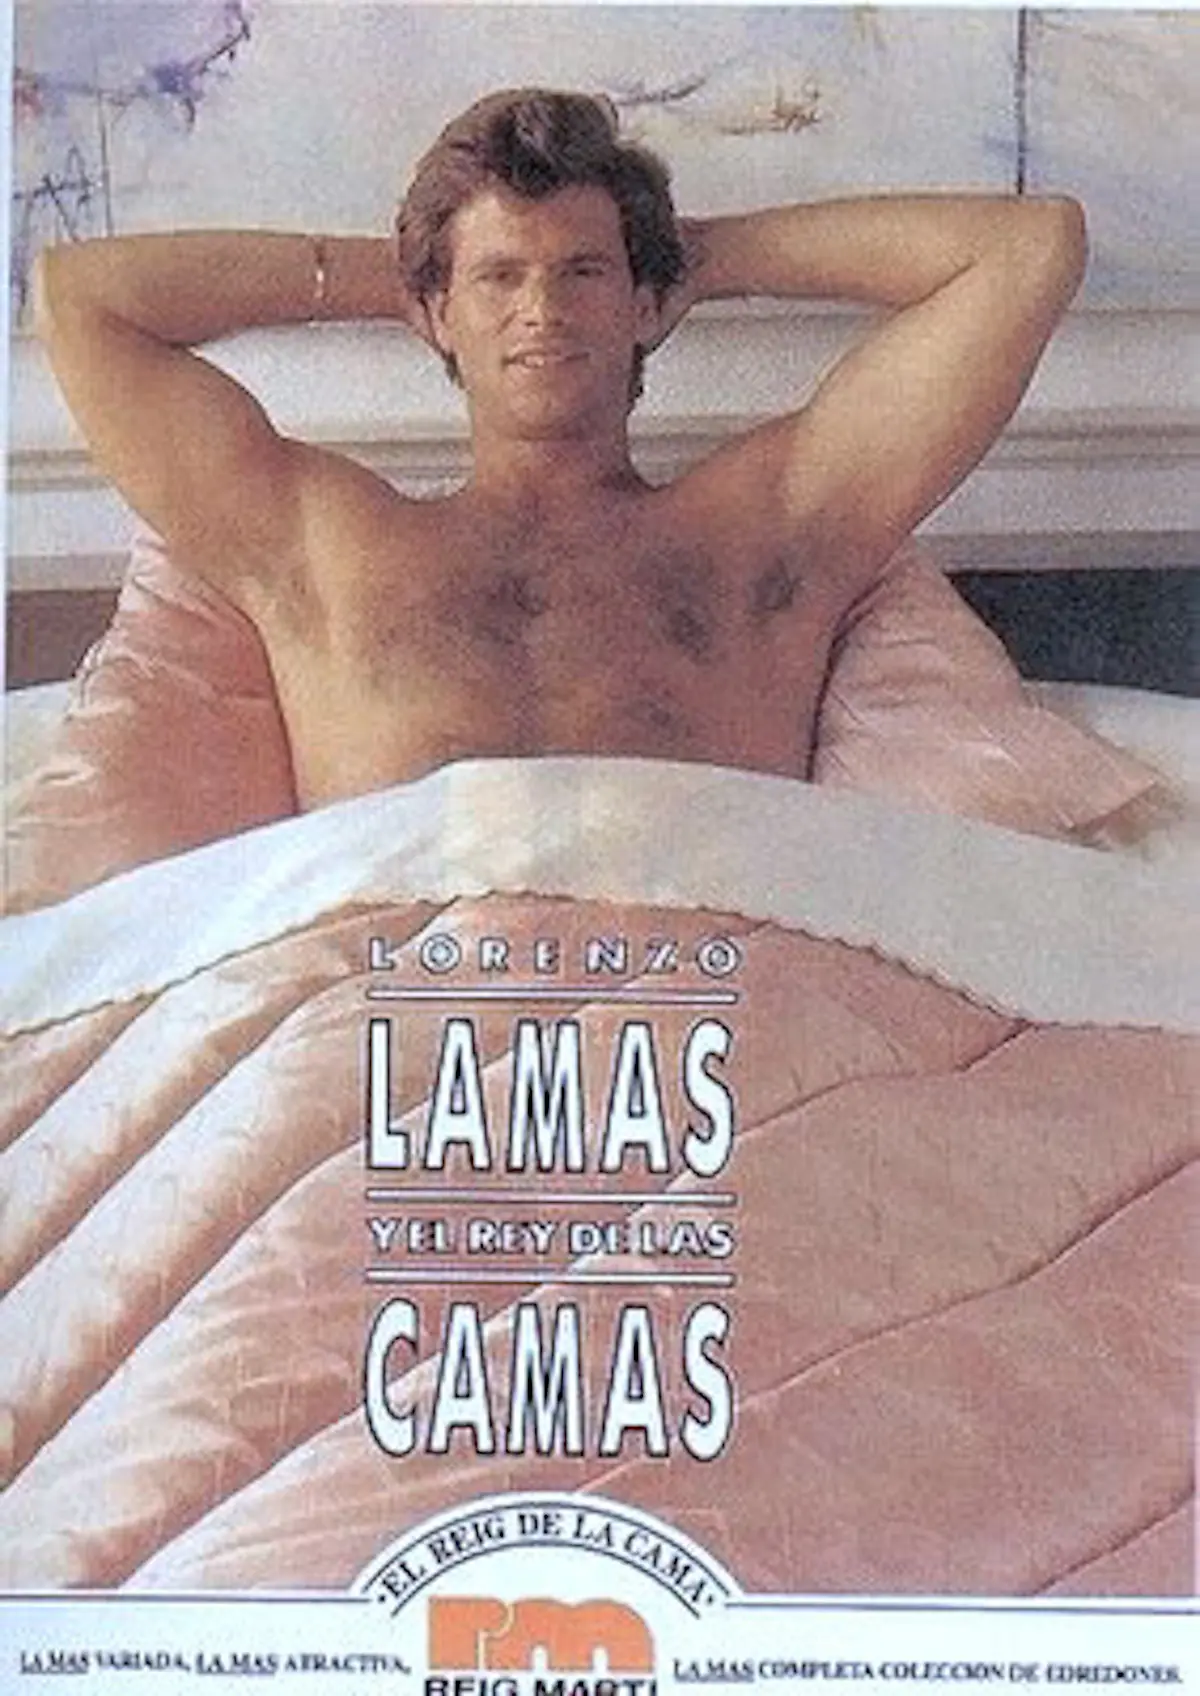 Lorenzo Lamas rey de las camas antes